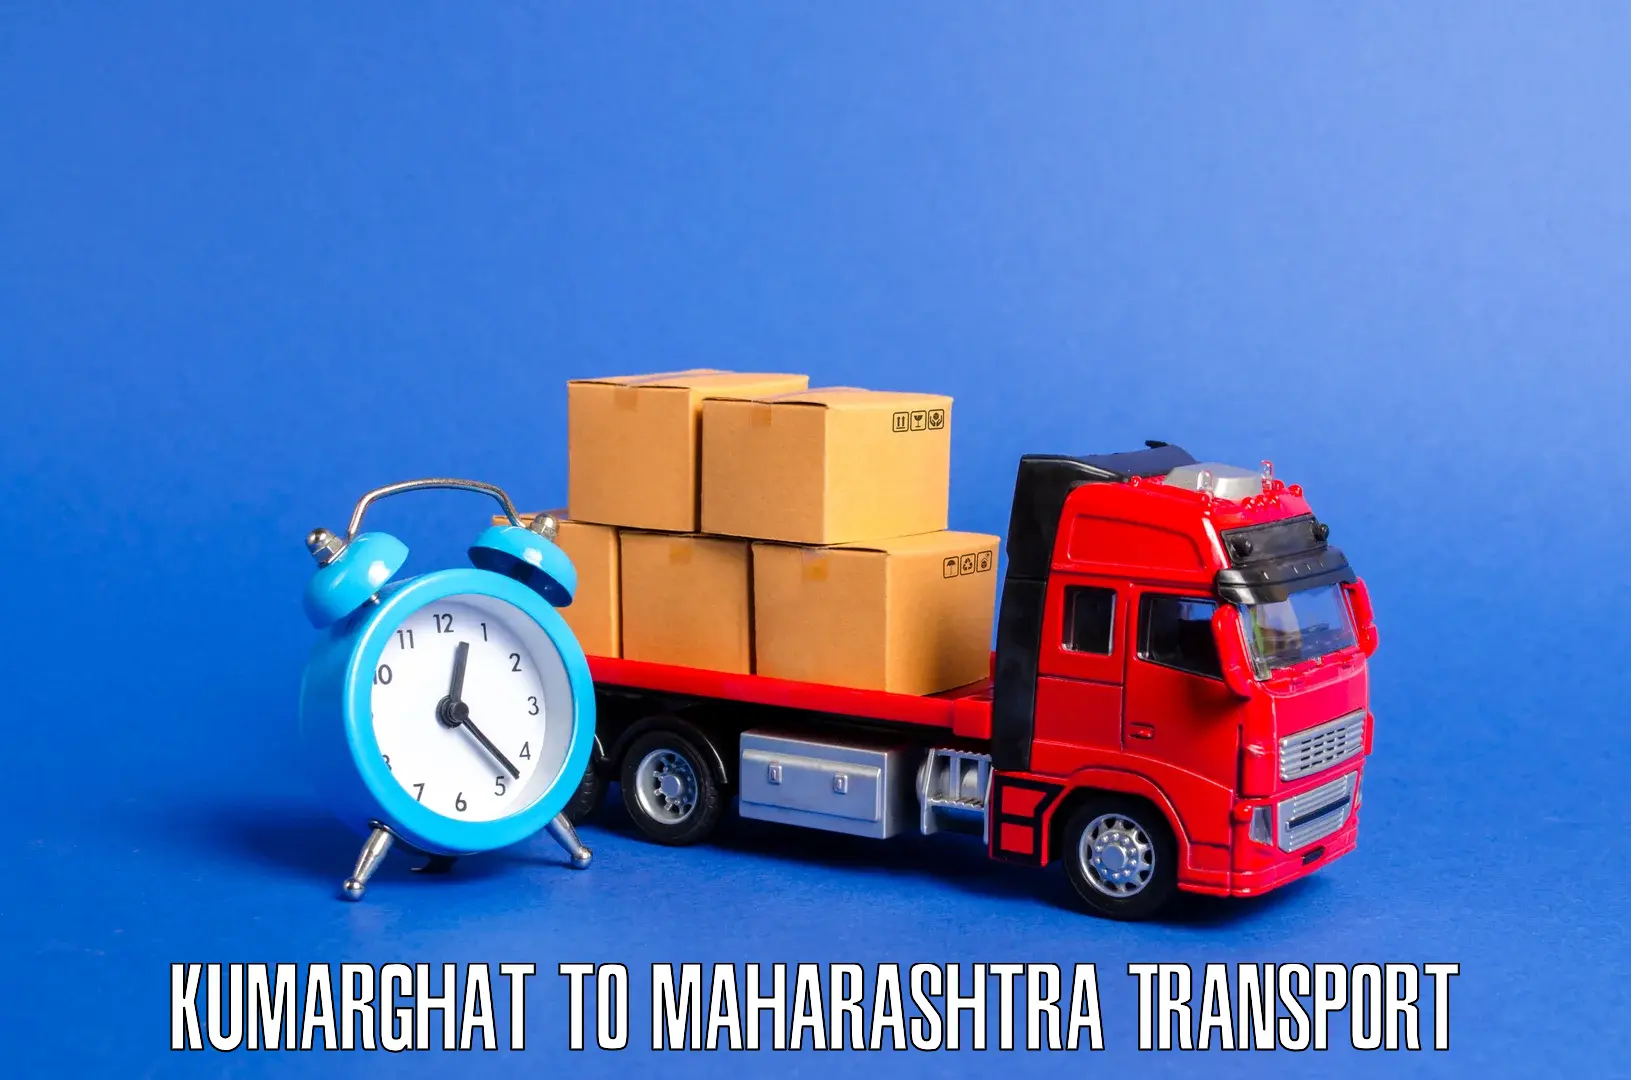 Daily transport service Kumarghat to Mahabaleshwar